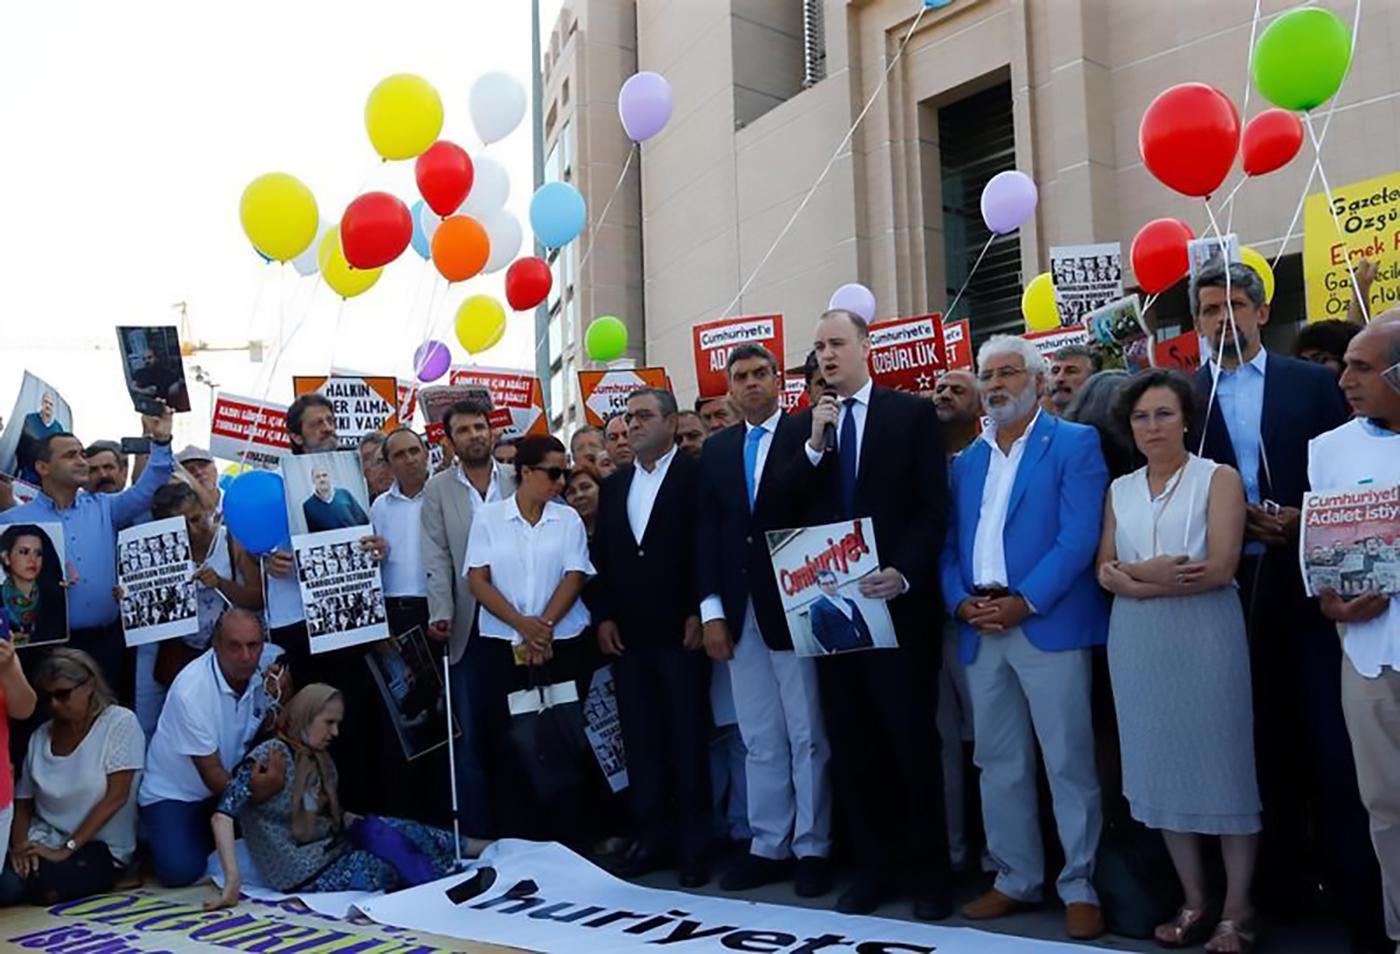 مظاهرة أمام محكمة في اسطنبول، تركيا تضامنا مع طاقم صحيفة "جمهوريت" المعارضة الذي يحاكَم على دعم مزعوم للجماعات الإرهابية، 24 يوليو/تموز 2017.